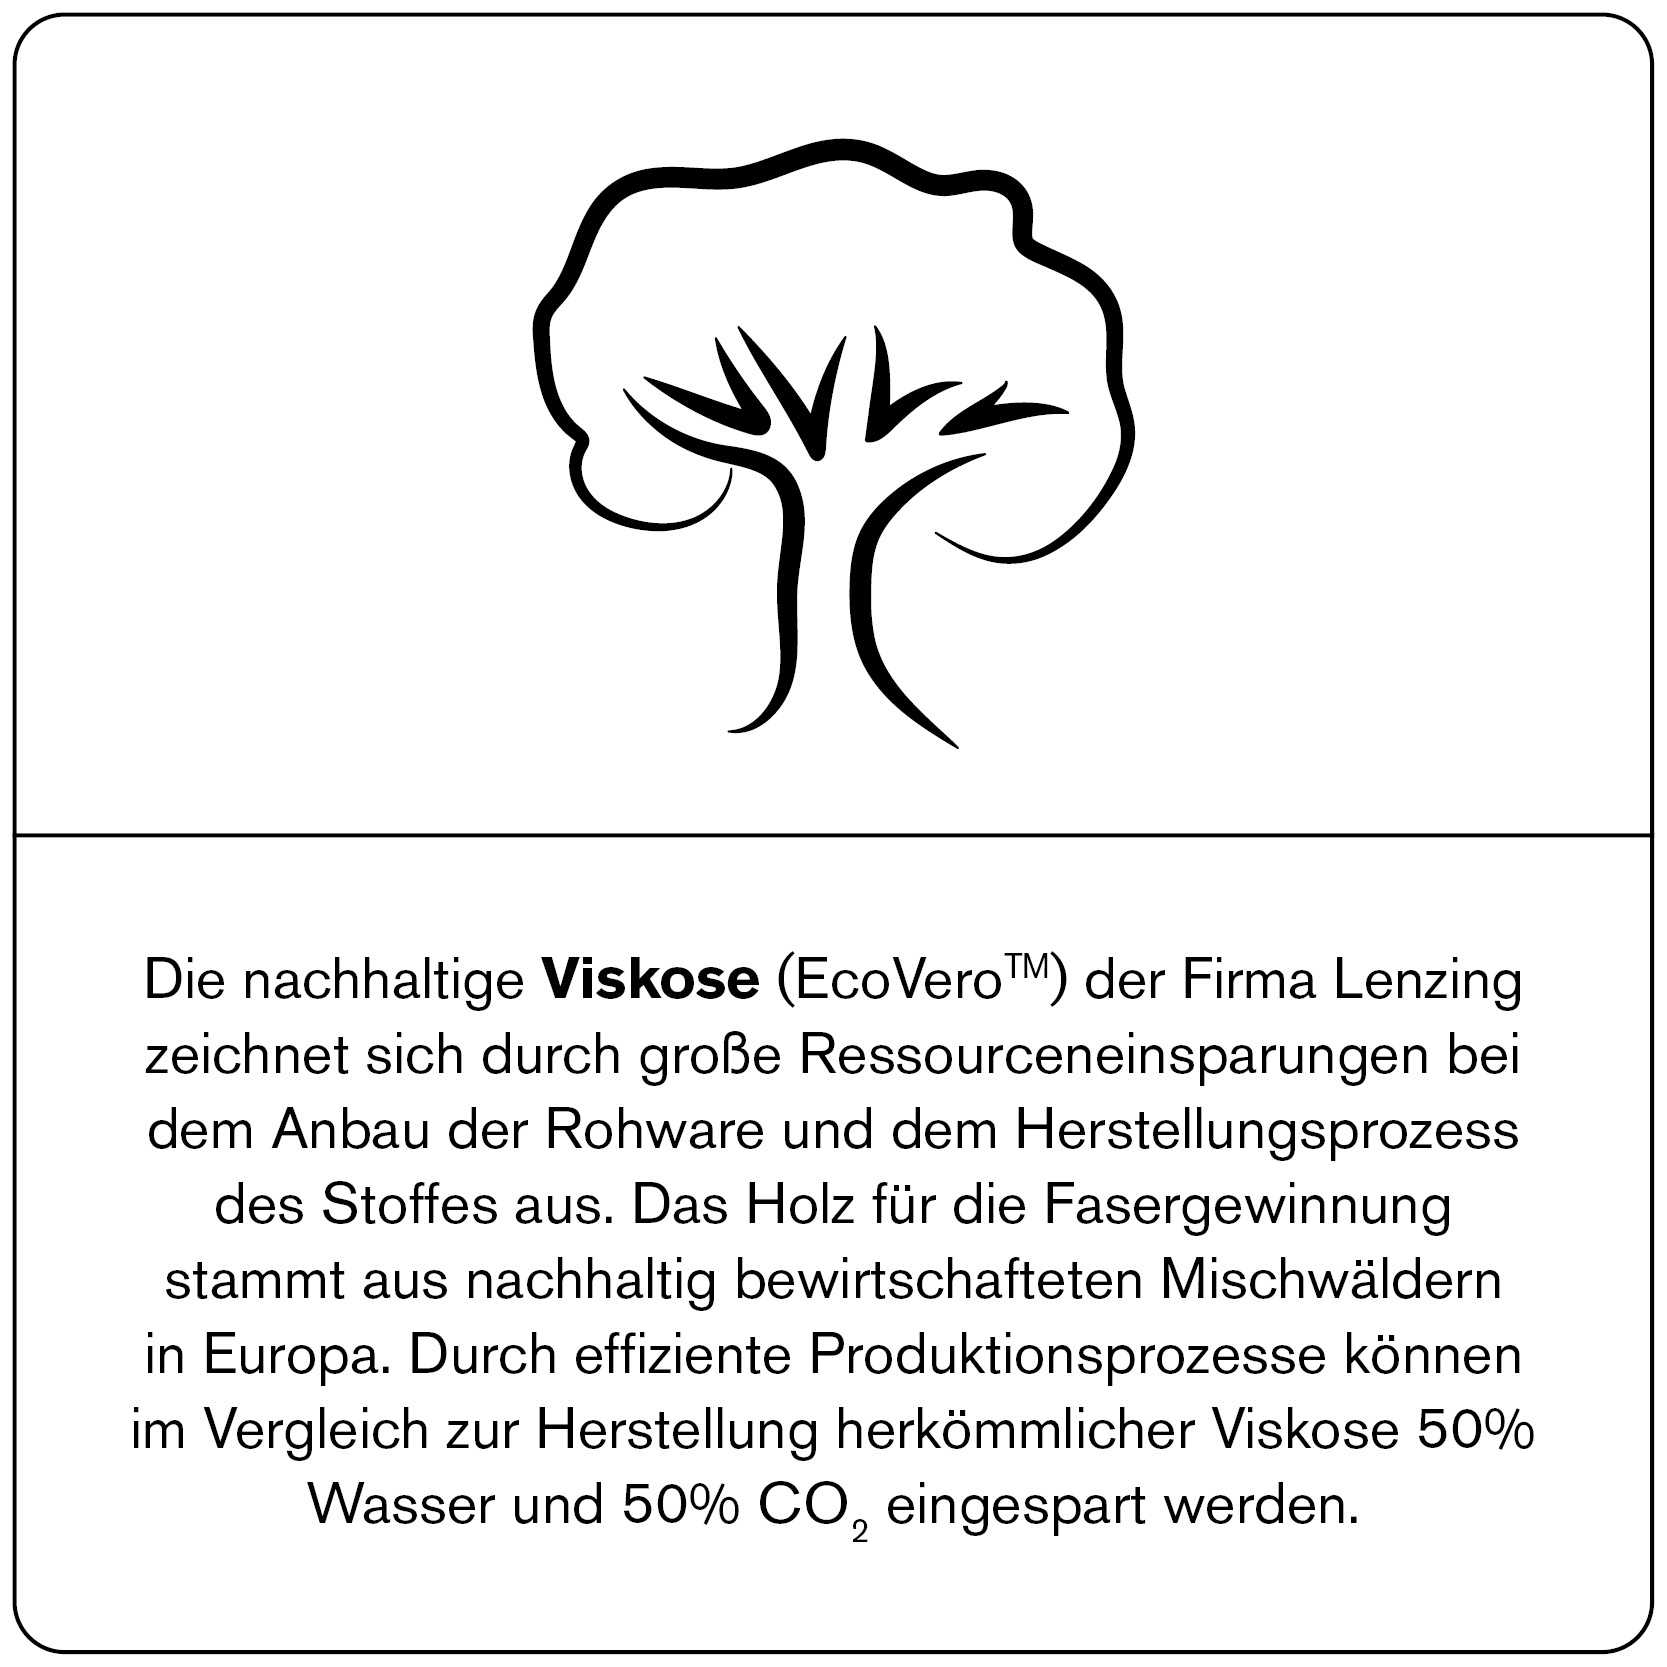 UVR Berlin: Elegante Mode aus Viskose - Stilvoll, komfortabel und nachhaltig